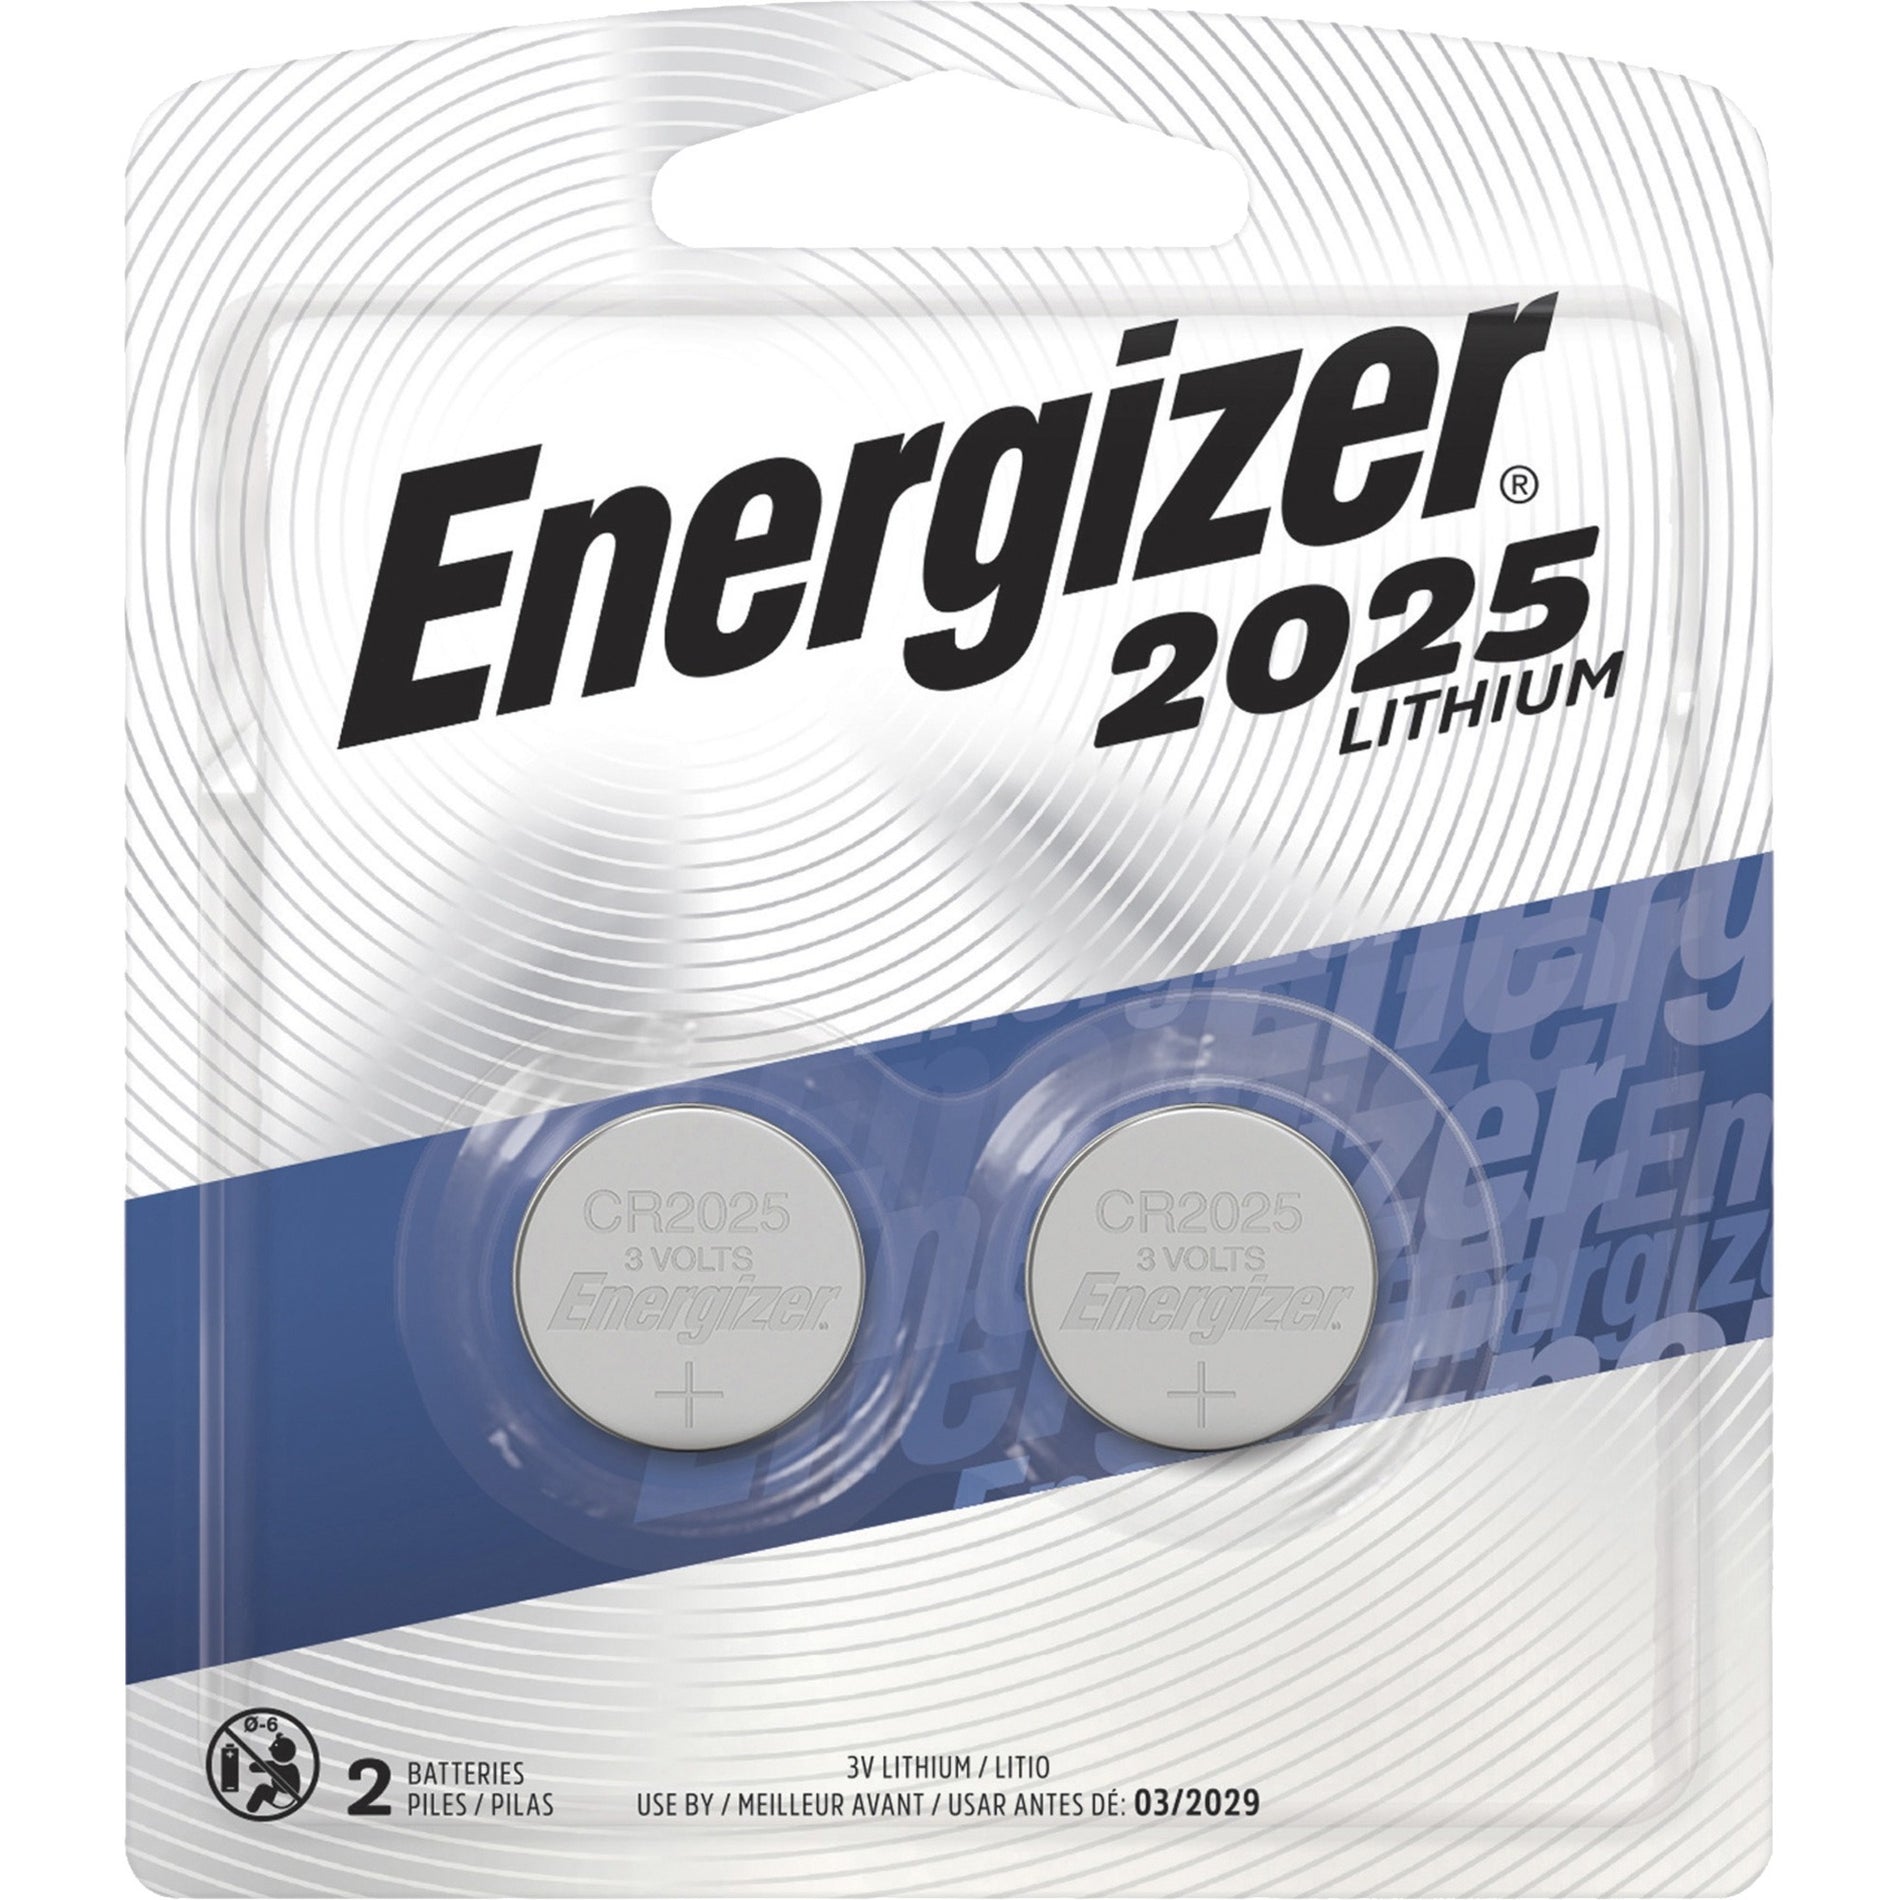 Energizer 2025BP2 2025 Lithium Coin Batteries, 2 Pack - Multipurpose 3V Battery